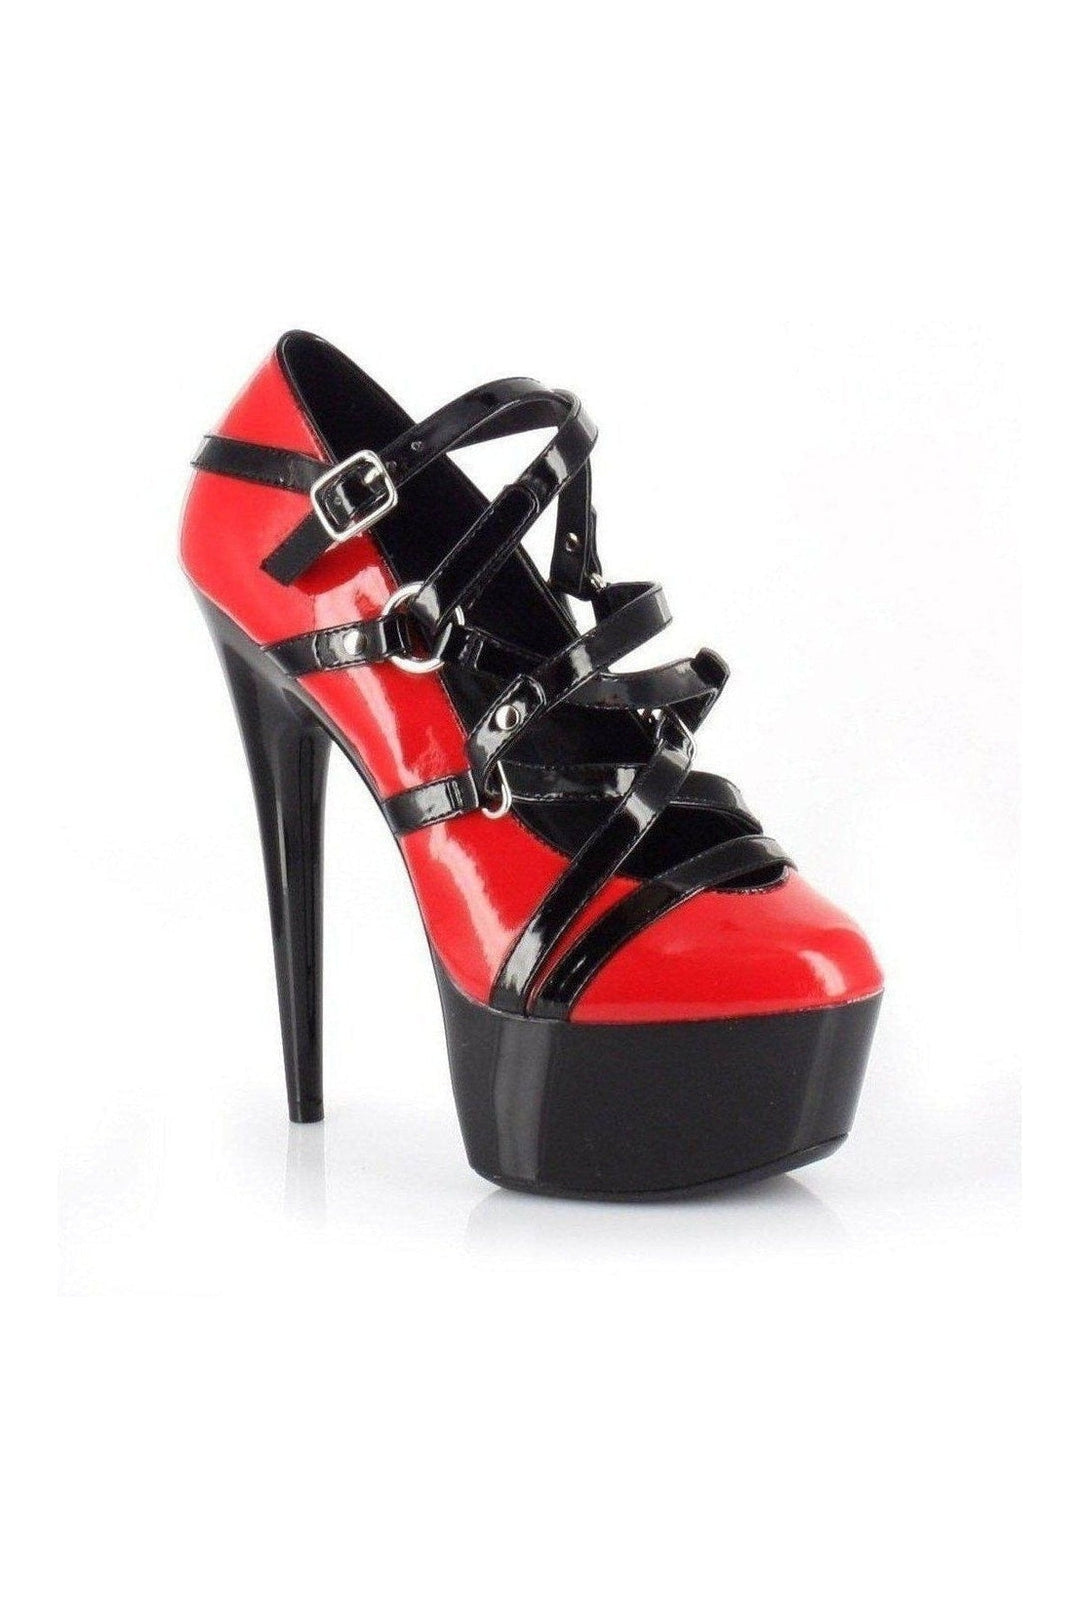 609-LOLLY Platform Pump | Red Patent-Ellie Shoes-SEXYSHOES.COM